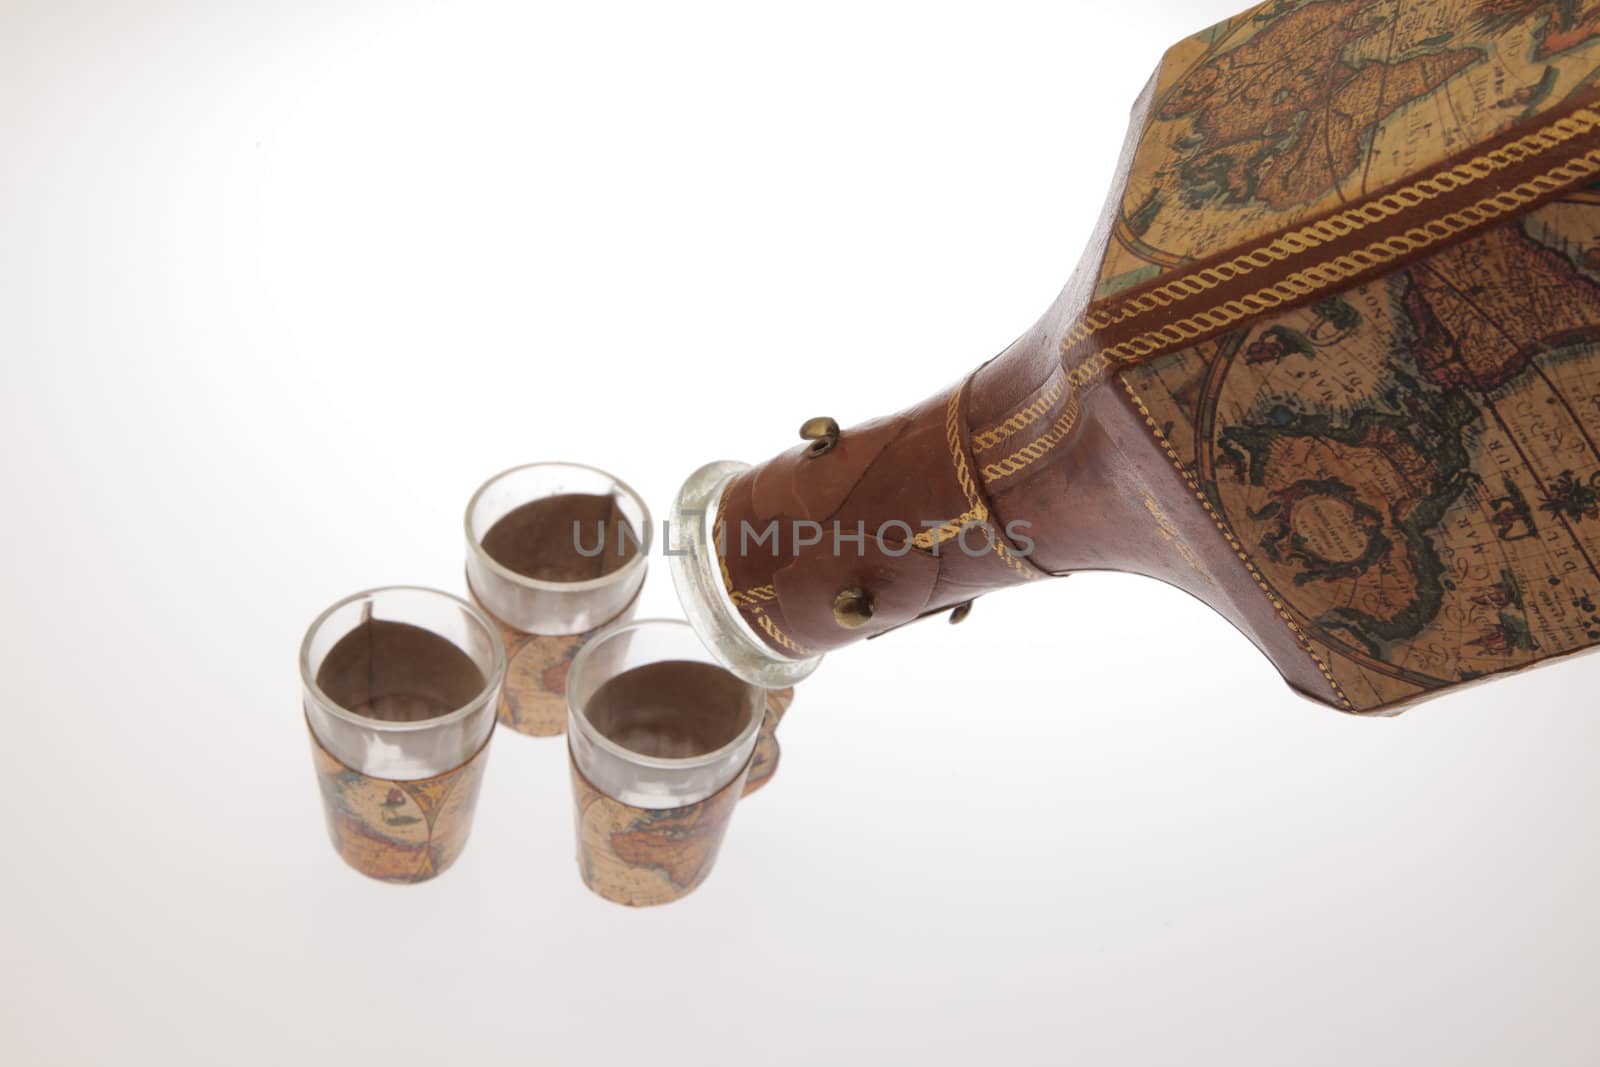 Explorer's liquor bottle with shot glasses